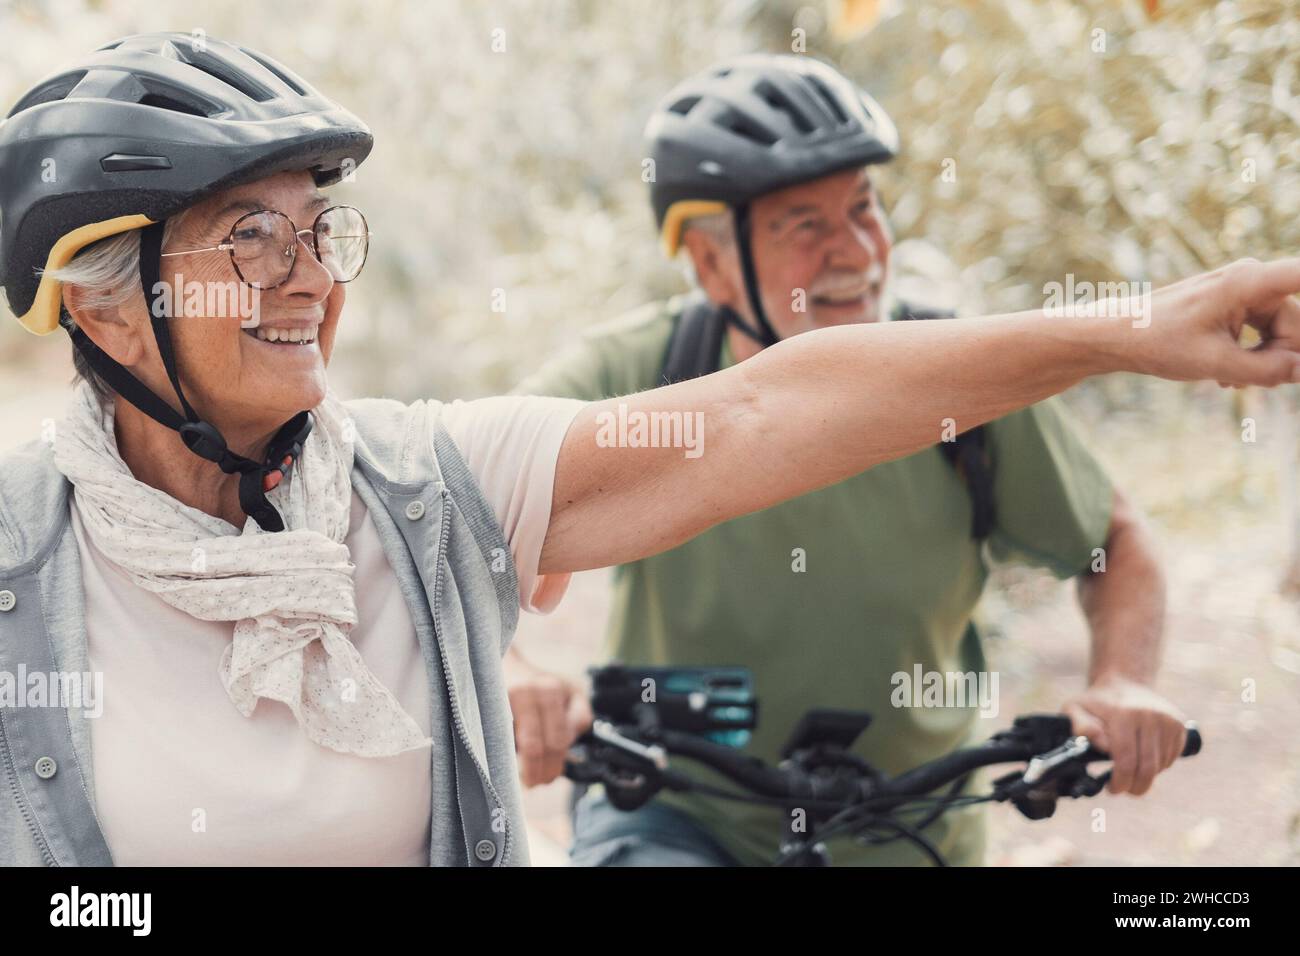 Zwei glückliche alte ältere Menschen genießen und gemeinsam Fahrrad fahren, um im Freien fit und gesund zu sein. Aktive Senioren, die Spaß beim Training in der Natur haben. Porträt eines alten Mannes, der mit seiner Frau lächelt und auf einer Fahrradtour ist. Frau zeigt etwas an und schaut es an. Stockfoto